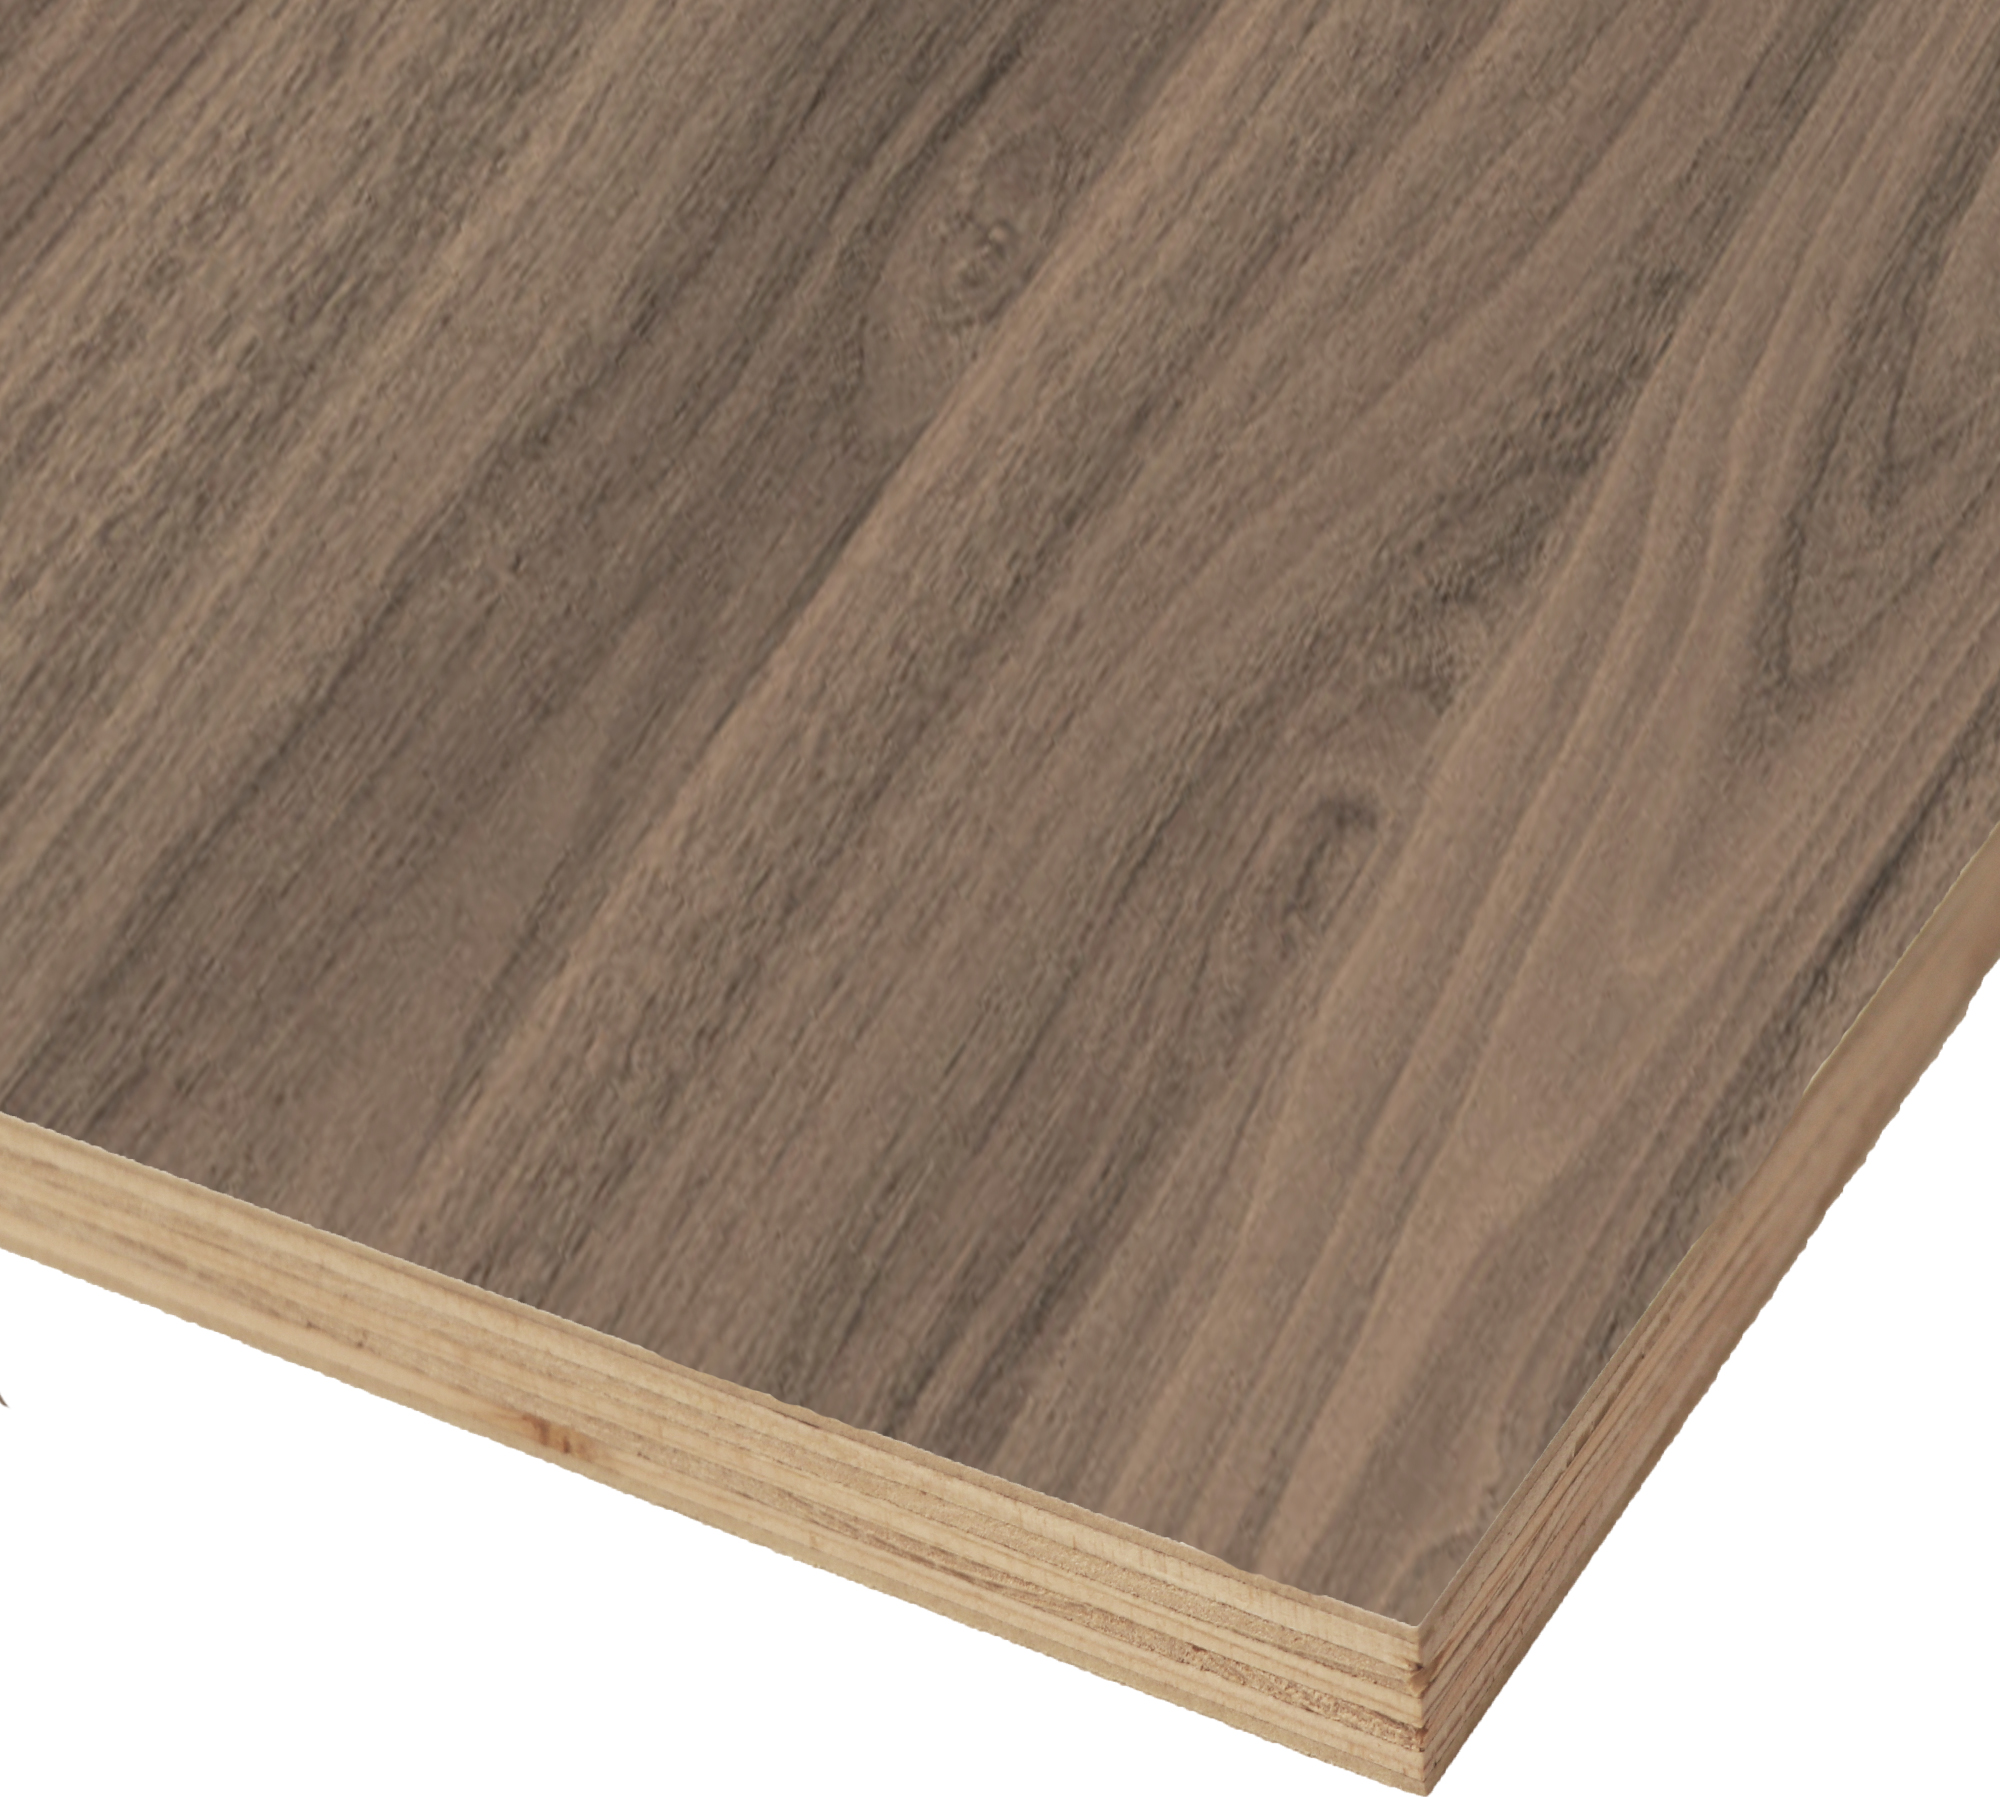 Walnut PS MDF A1 1/4 x 4x8 Birchland Plywood-Veneer Ltd, DSI